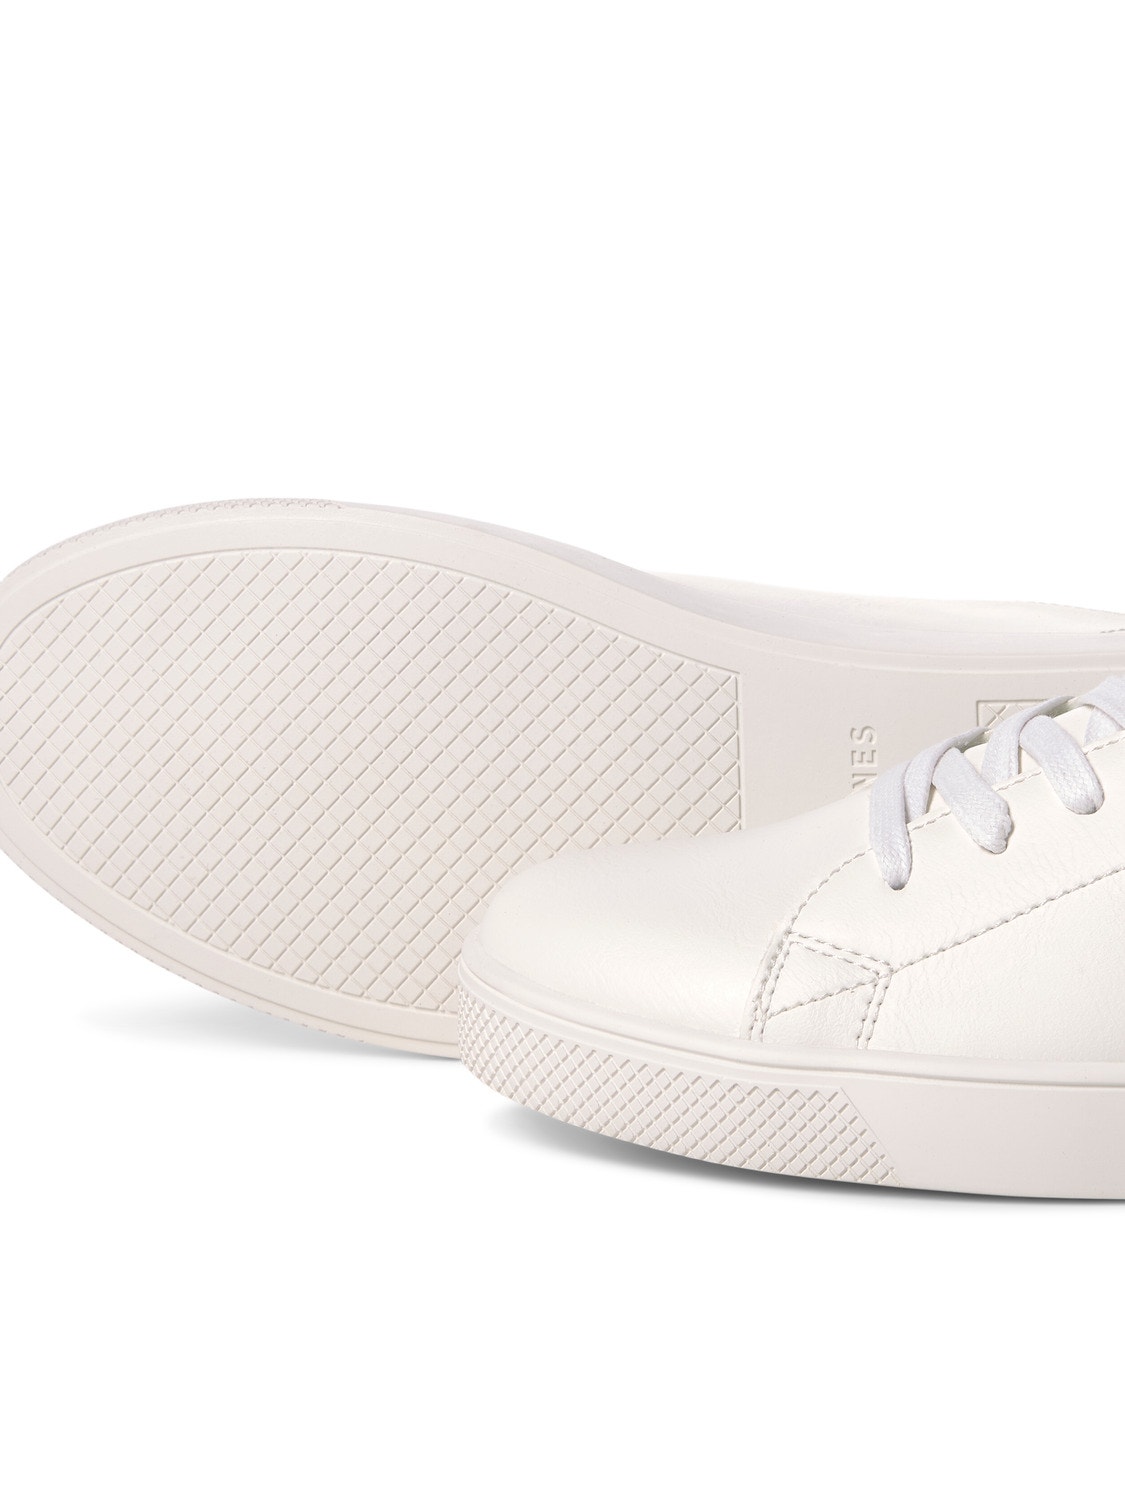 Jack & Jones Polyester Sneaker -White - 12203642